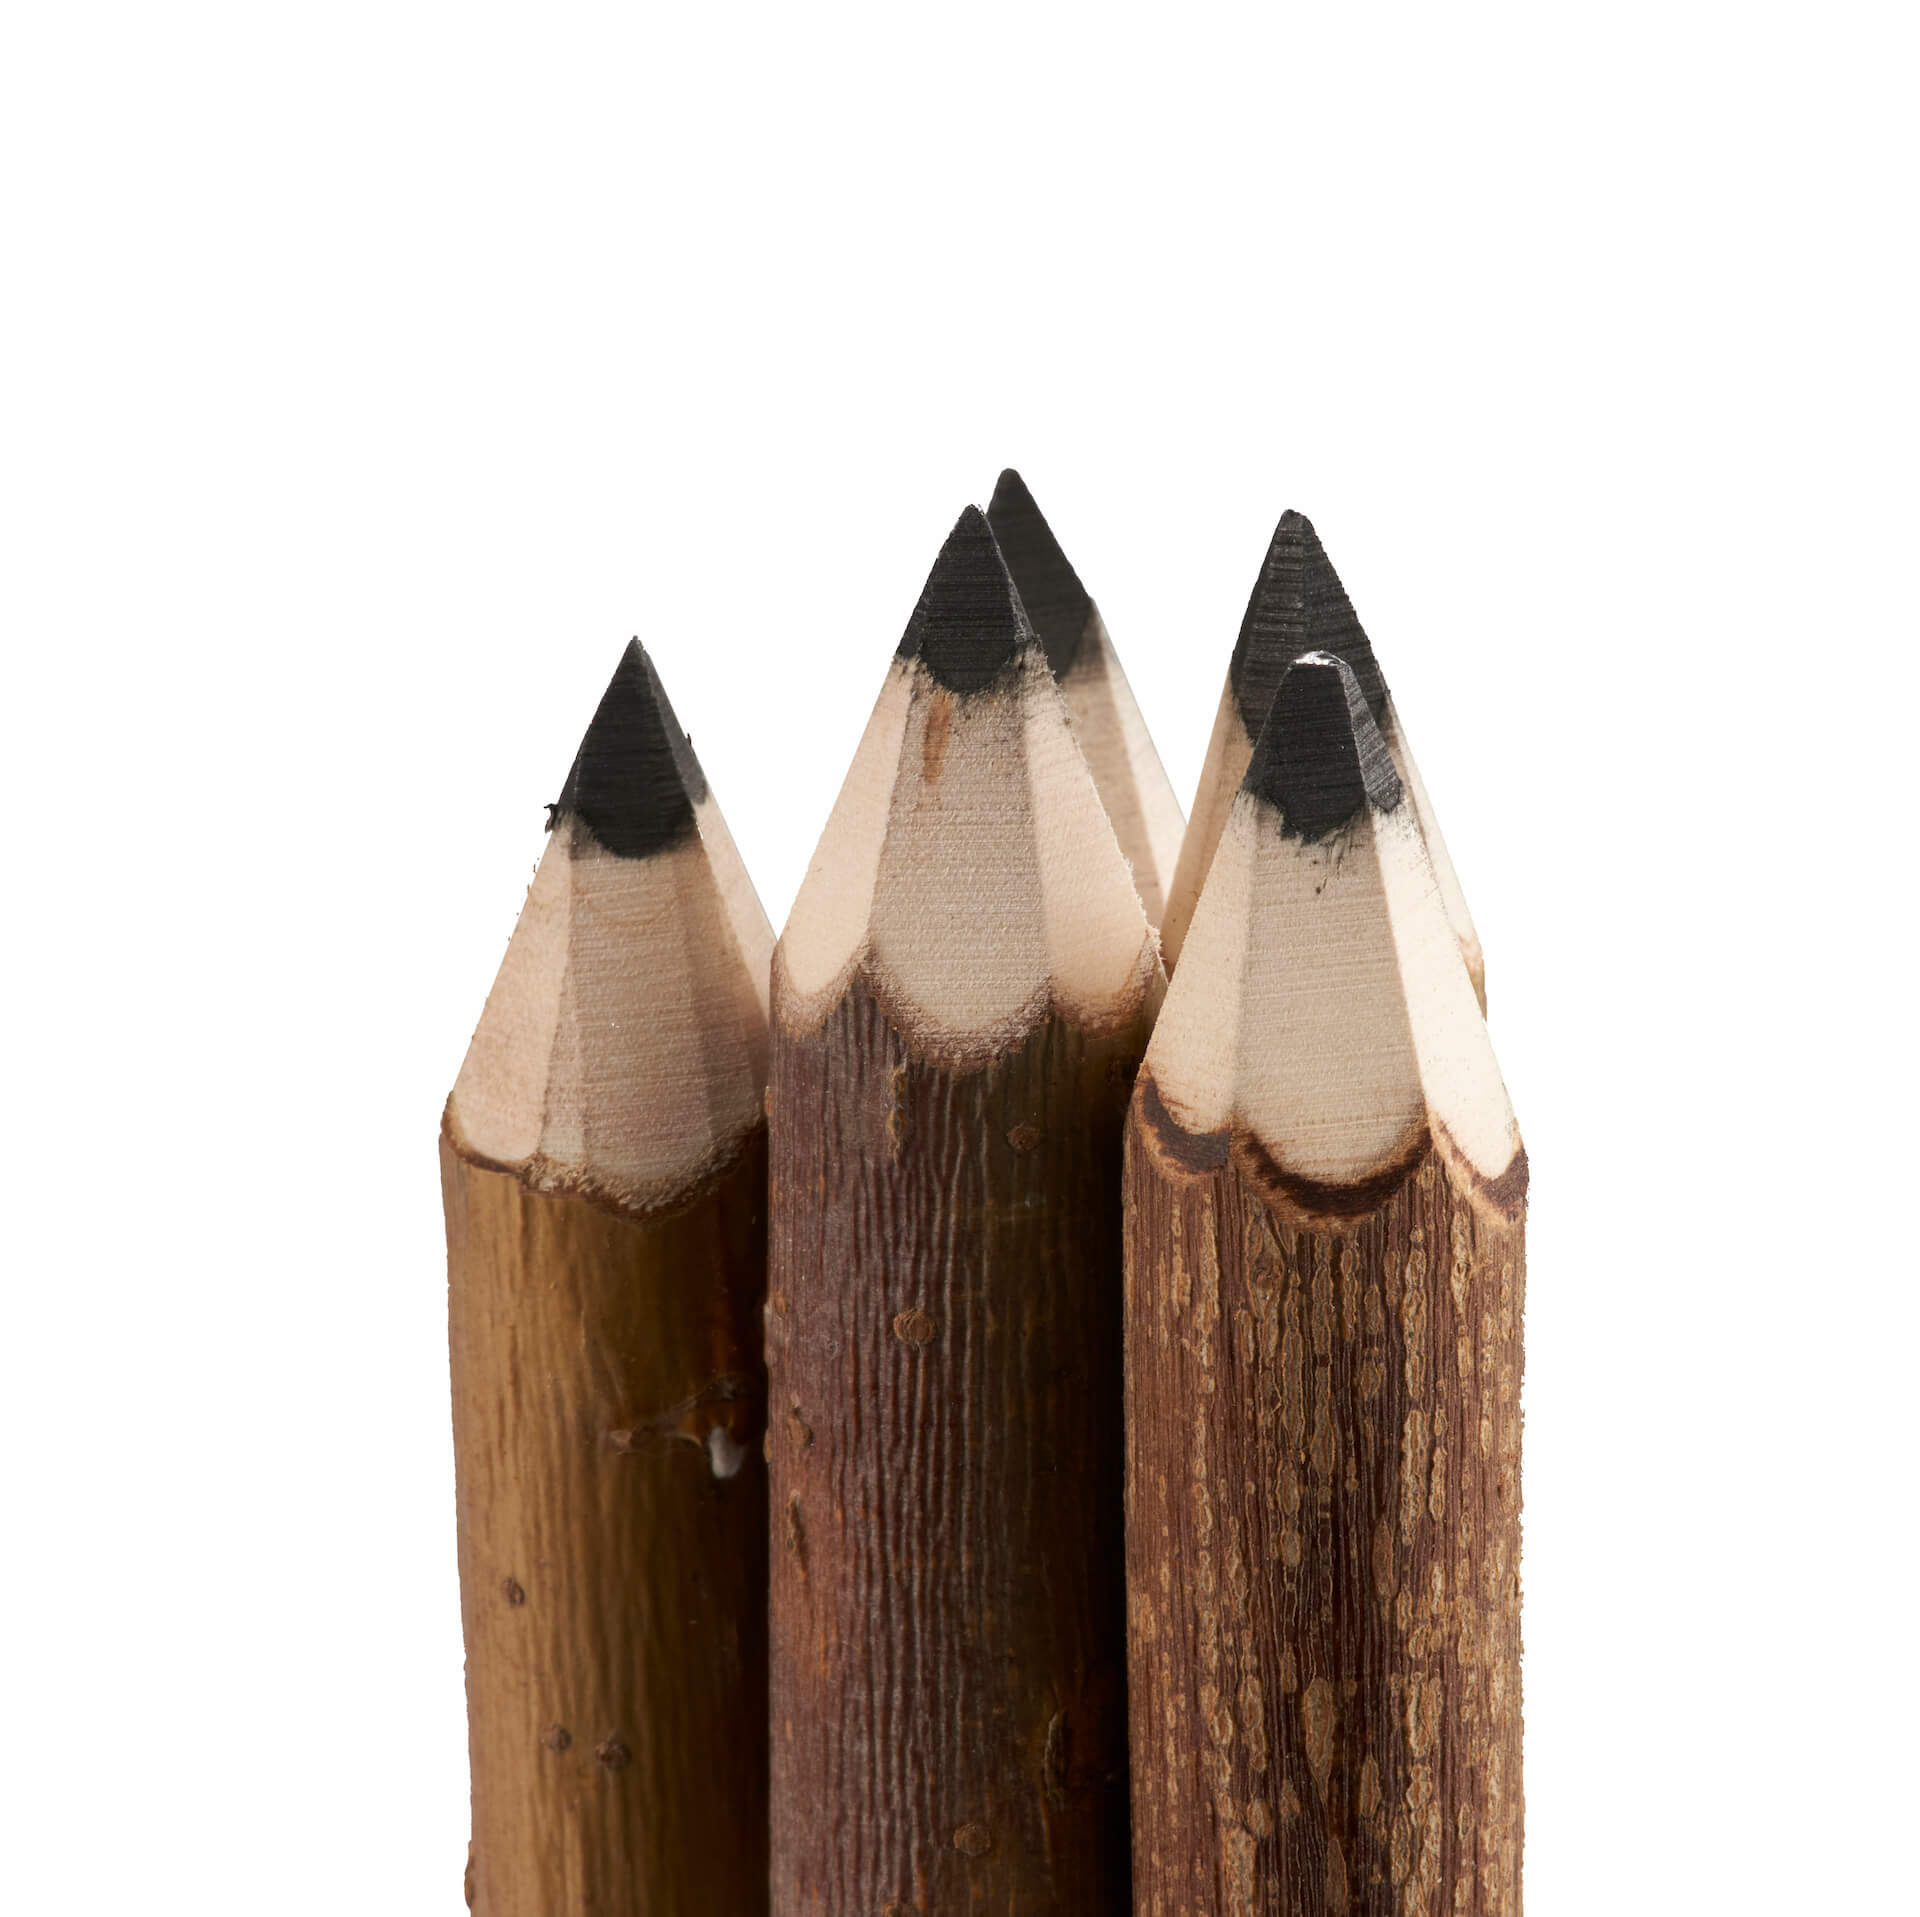 Crayons de menuisier – Les crayons d'Opy